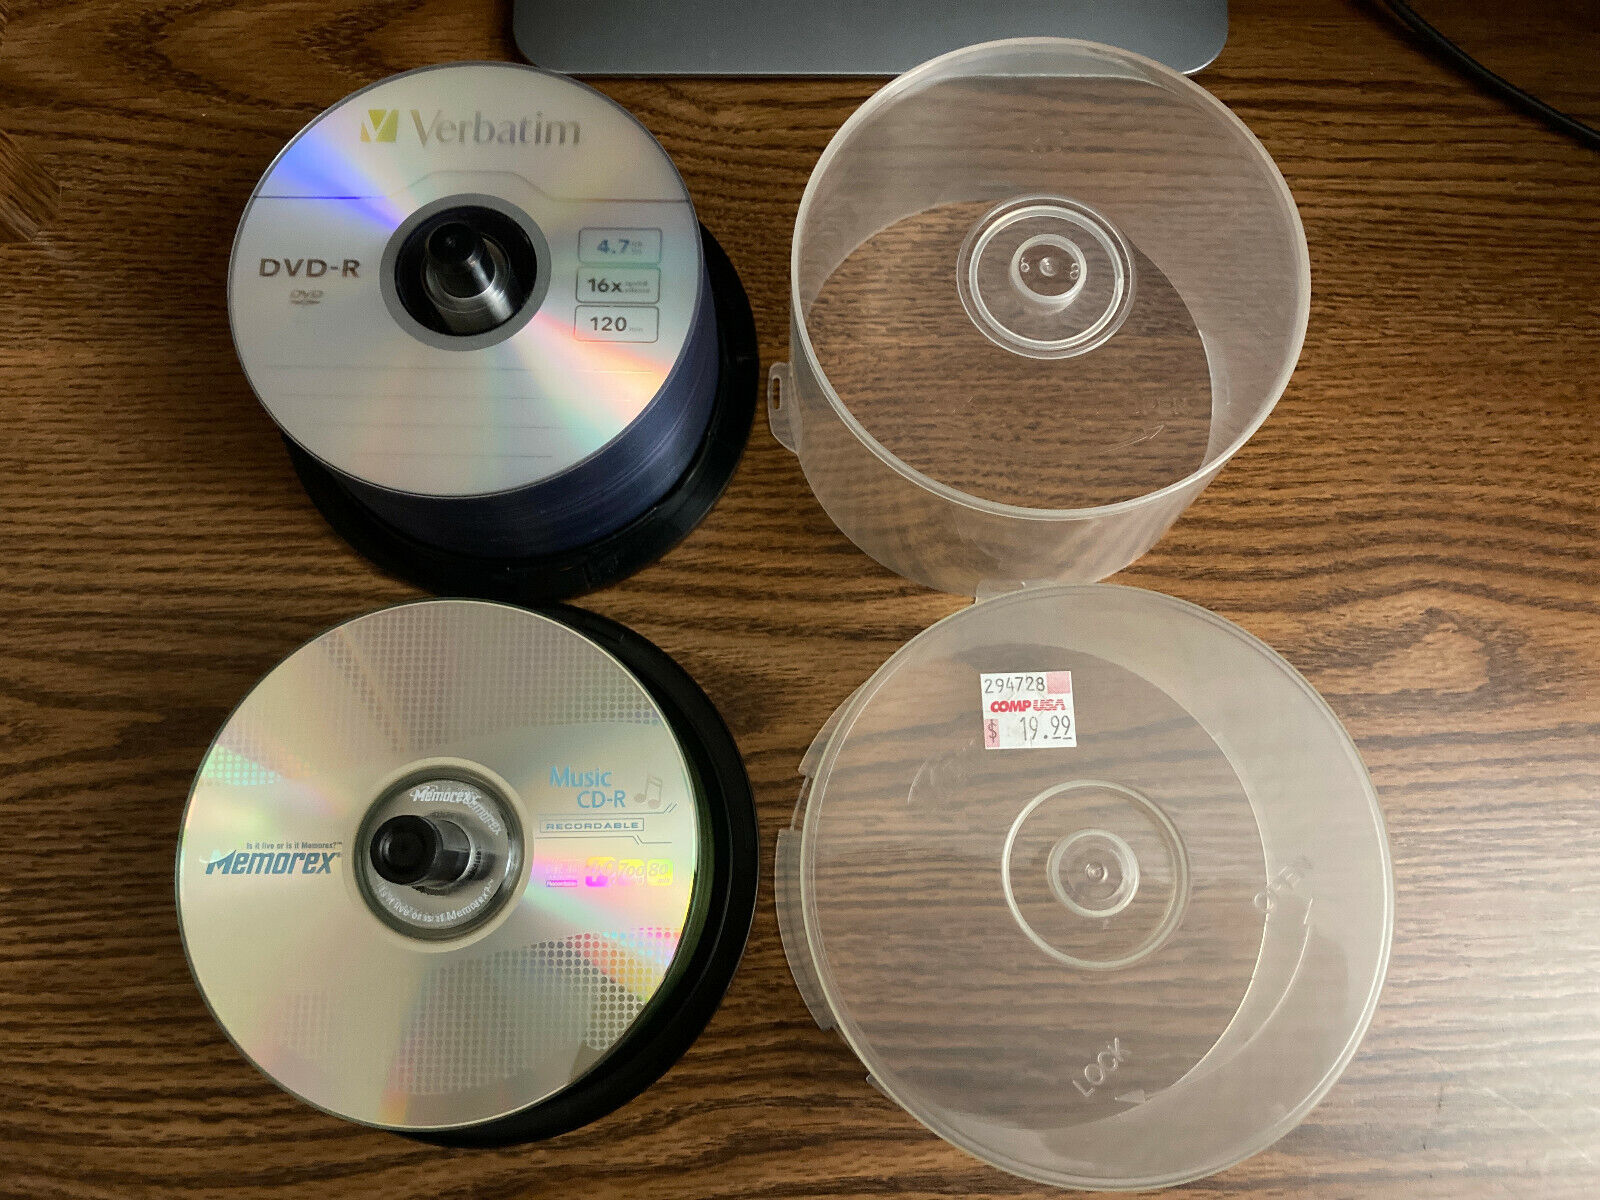 Blank CDs Blank CD-R Discs in Blank Media 